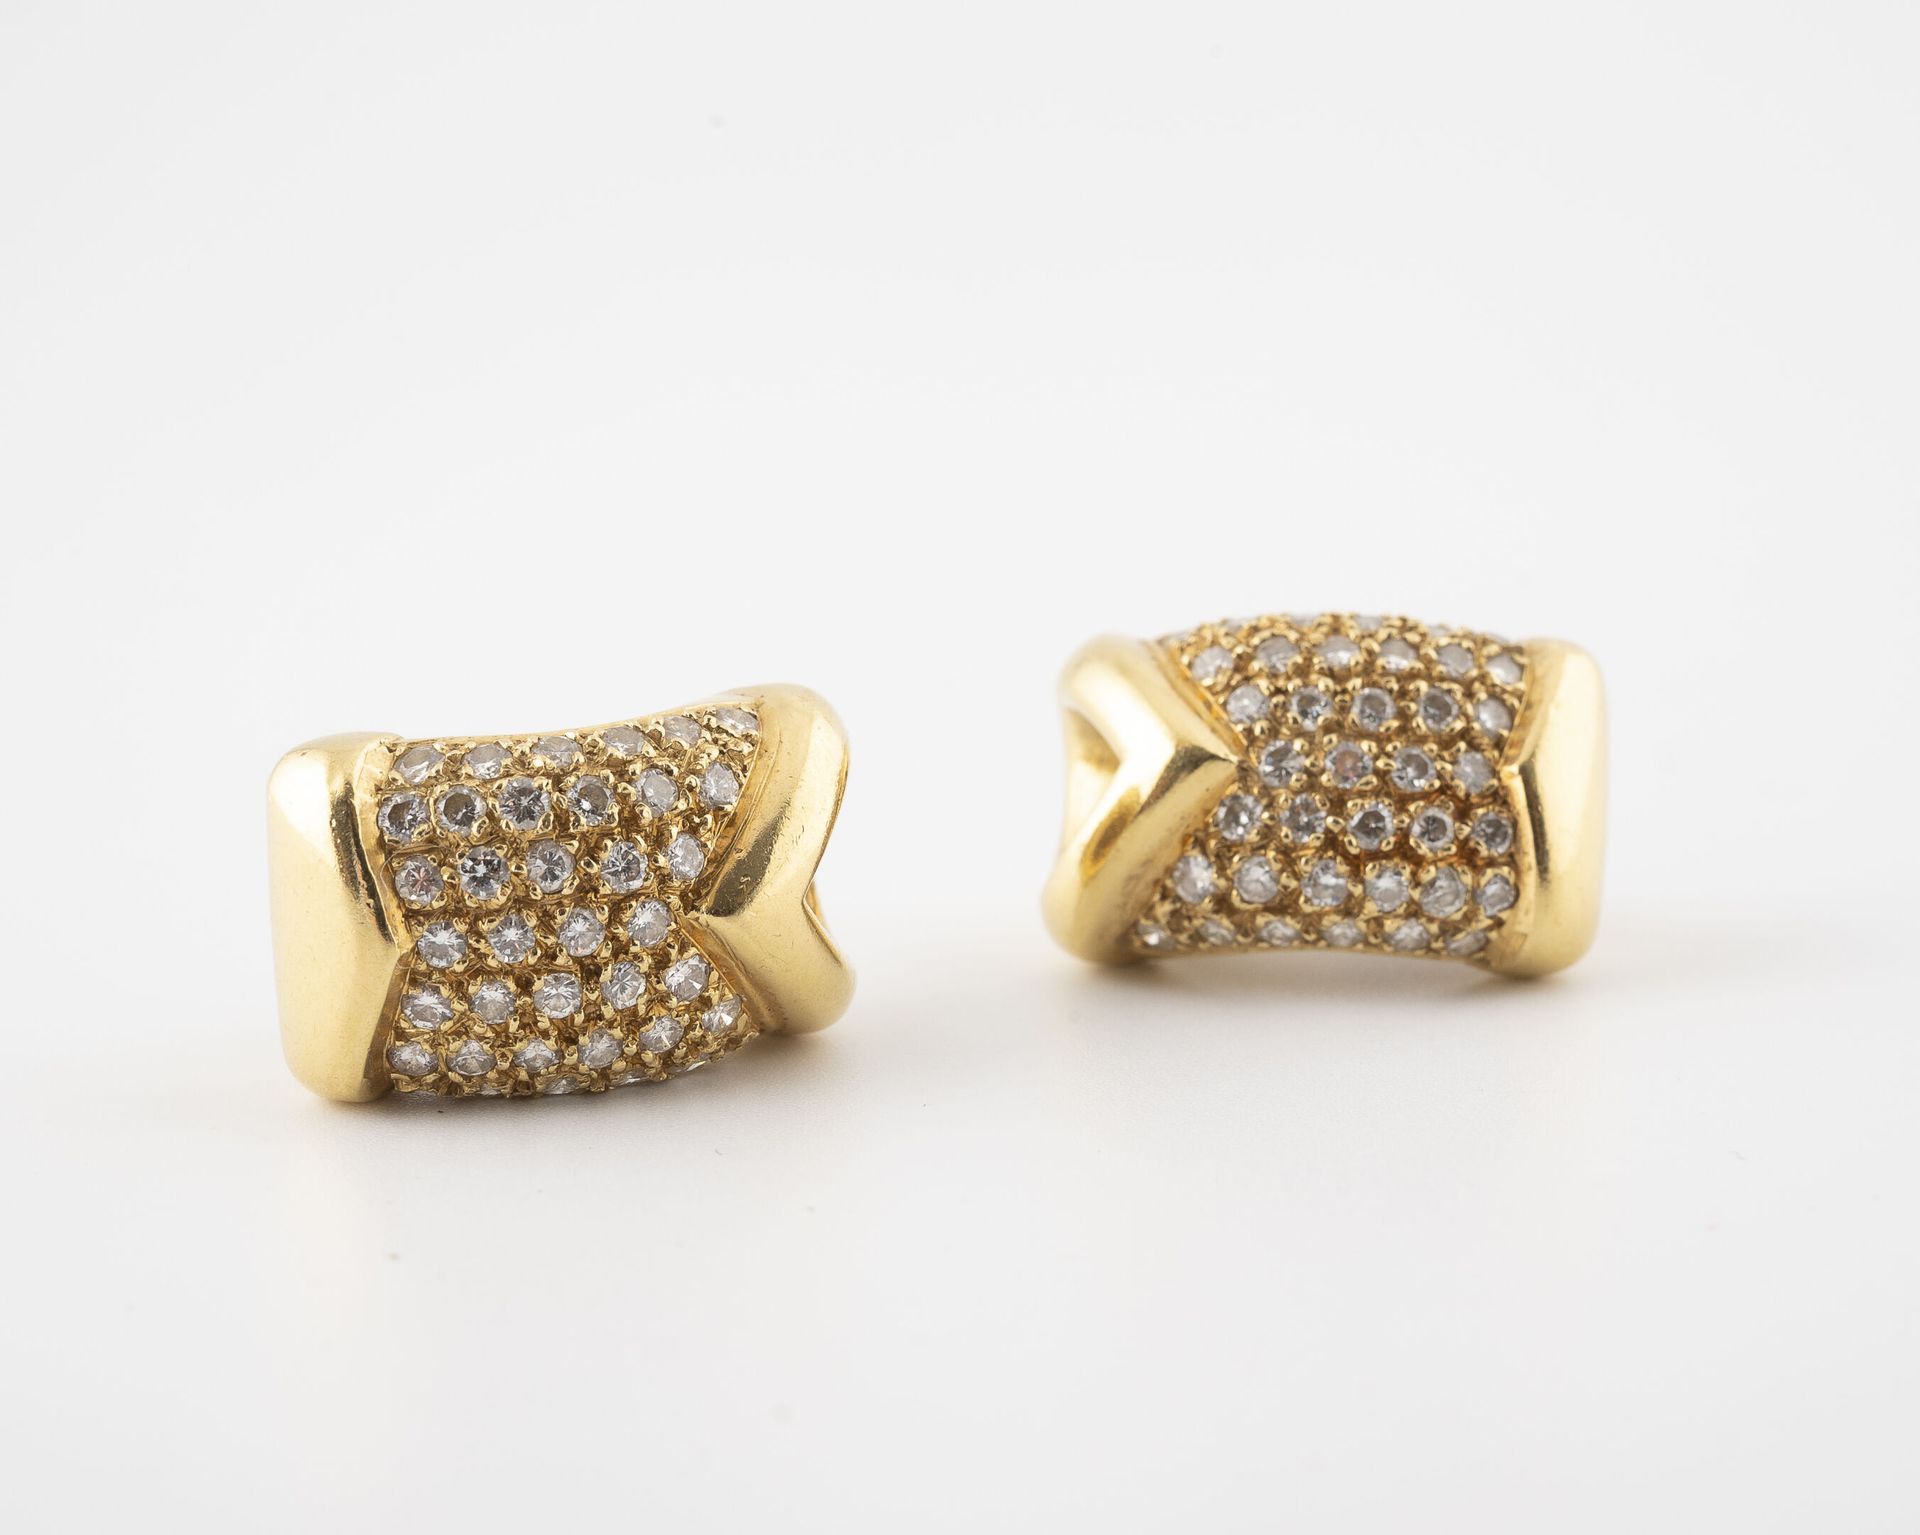 Null 黄金（750）一对耳环，镶嵌小型明亮式切割钻石。

用于穿耳的系统。 

总毛重：25.7克。 

刮伤。